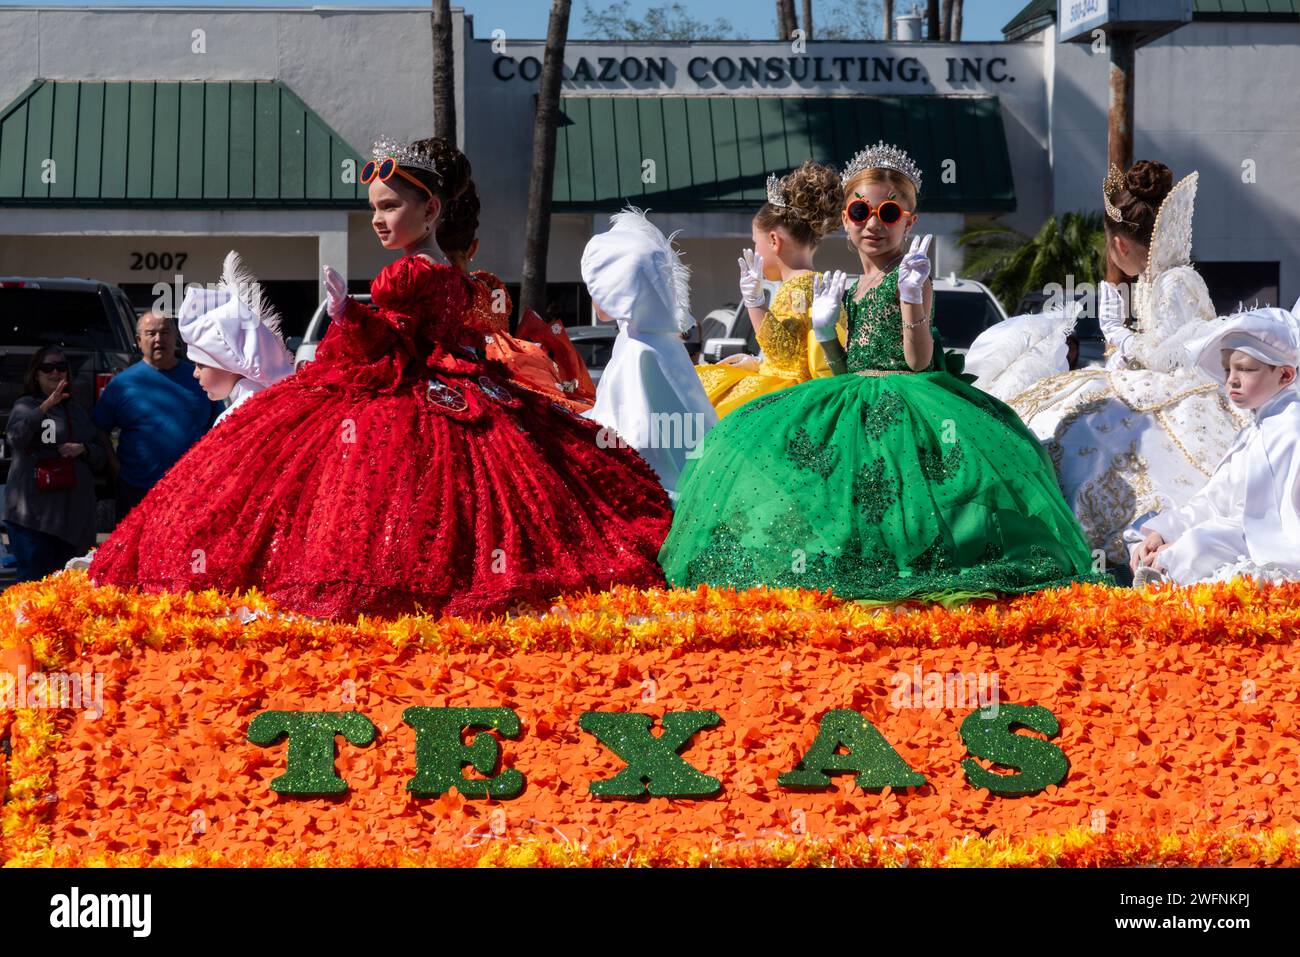 Le giovani ragazze che indossano abiti con gonna a cerchio dai colori vivaci si uniscono alla folla durante la 92a edizione della Texas Citrus Fiesta's Parade of Oranges, Mission, Texas, USA. Foto Stock